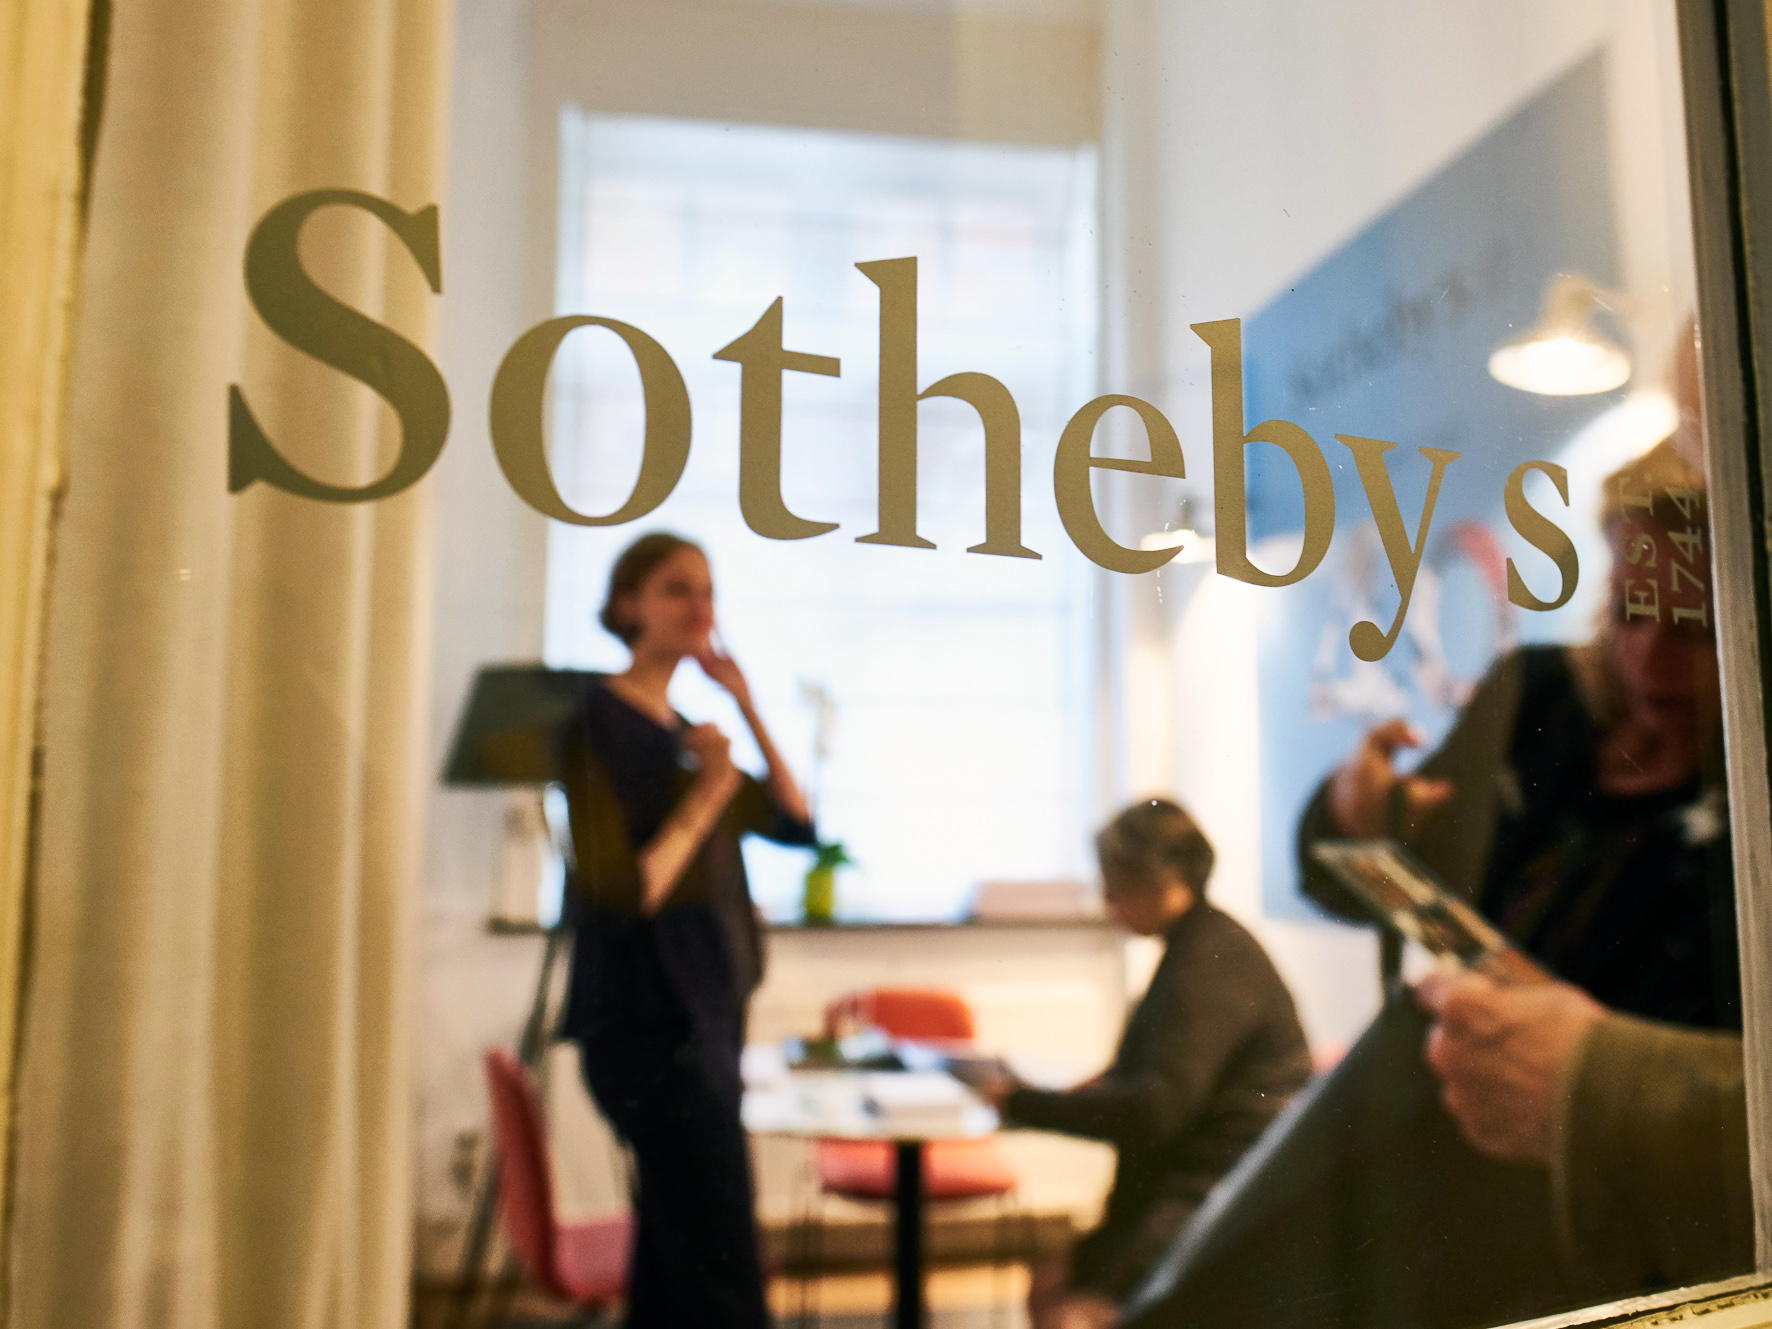 Belgium Sothebys Int. Realty Crayer-Jordaens III